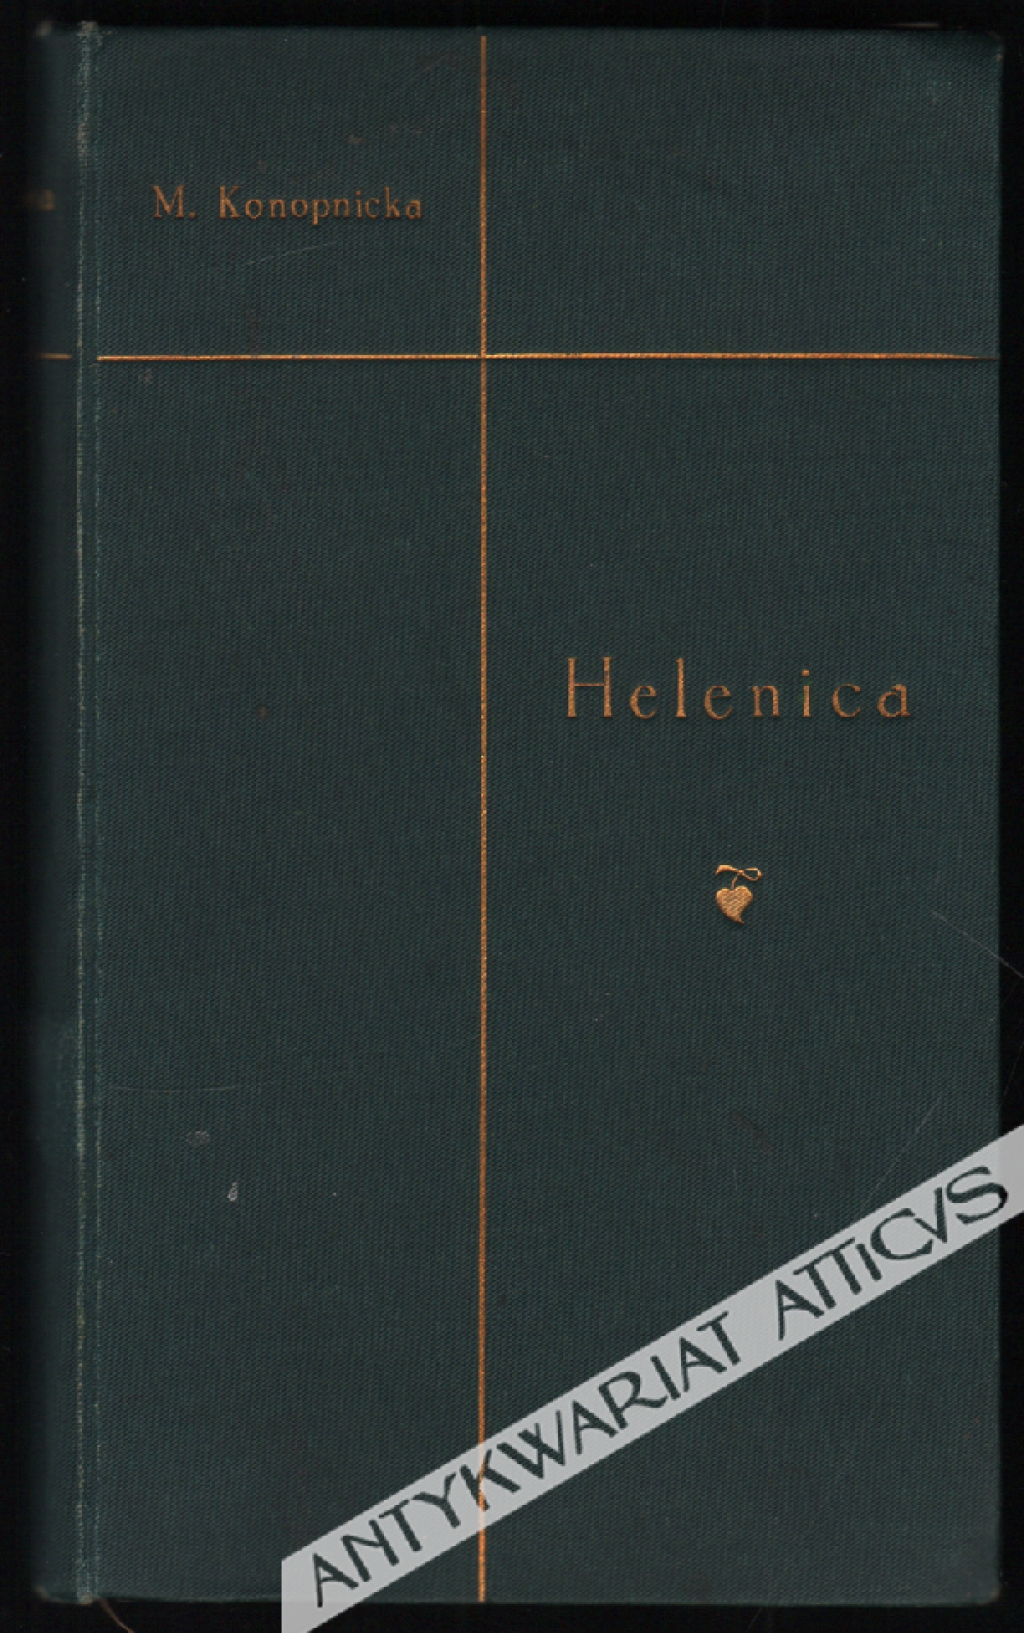 Poezje w nowym układzie, t. II: Helenica